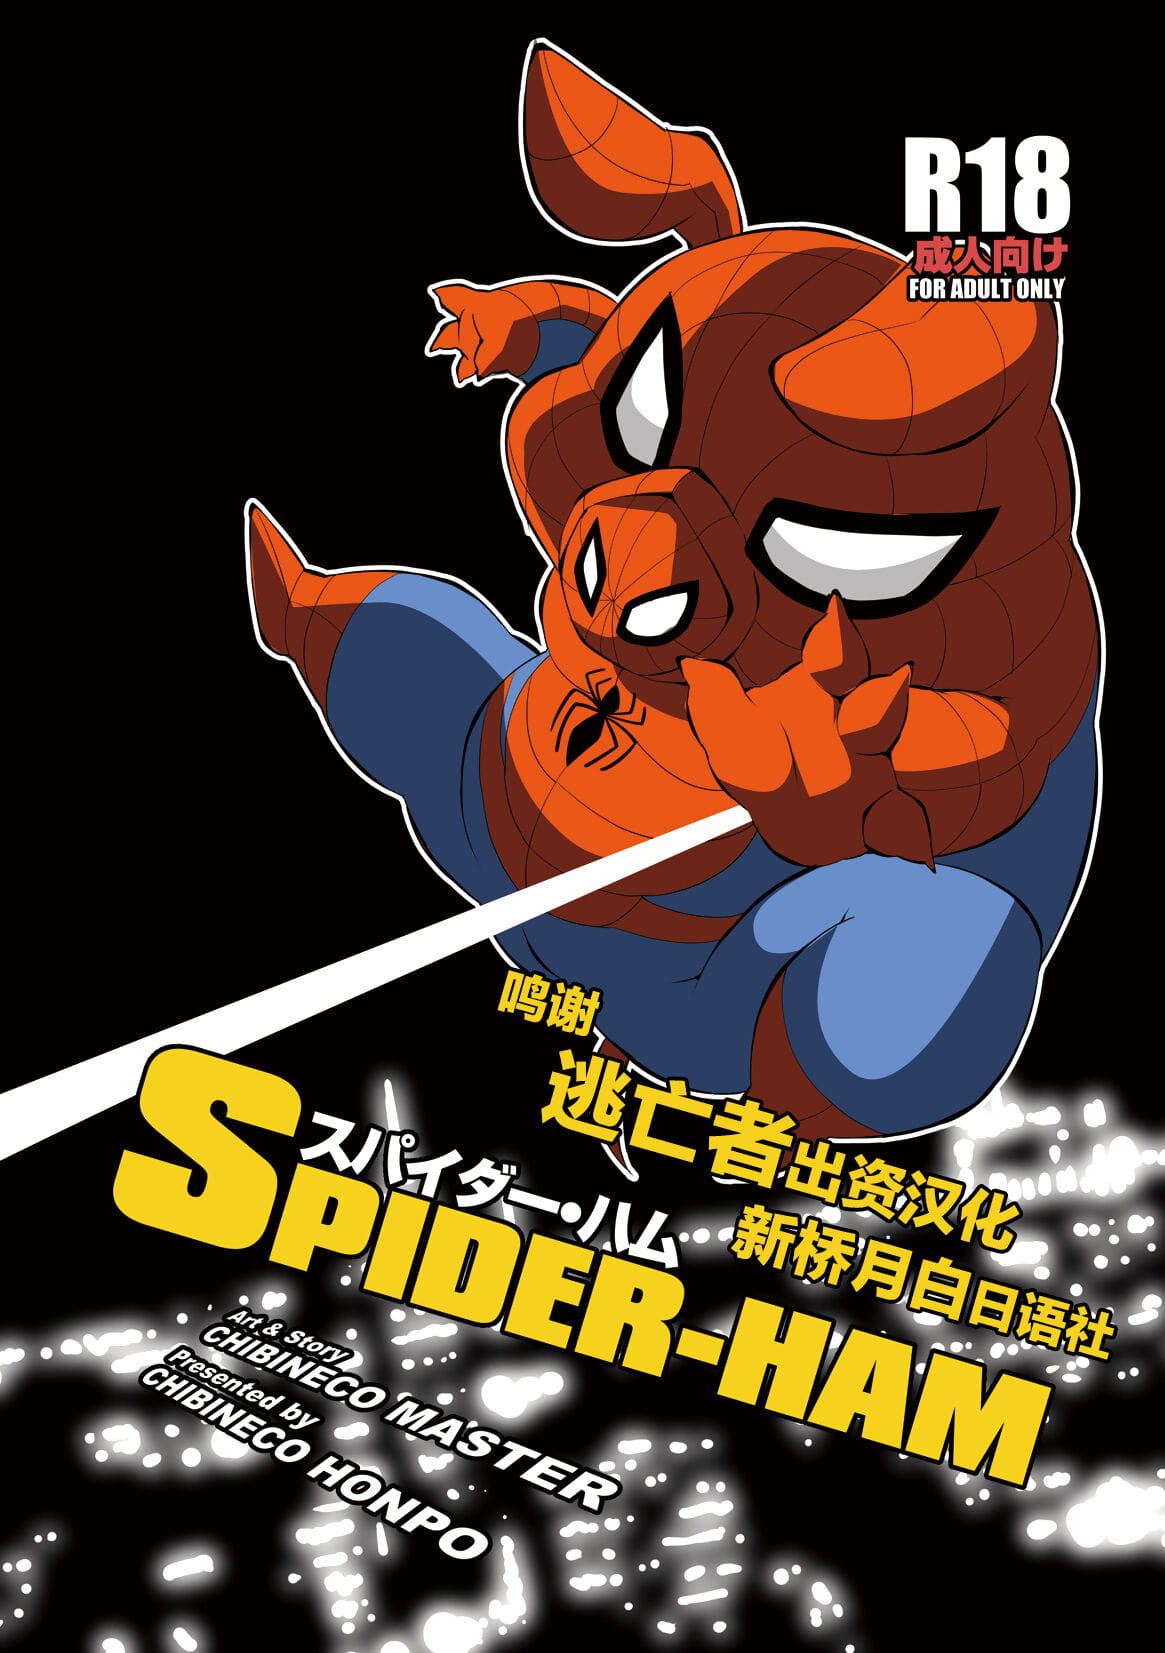 Chibineco Honpo Chibineco Master Spider Ham Chinese 逃亡者×新桥月白日语社 Digital